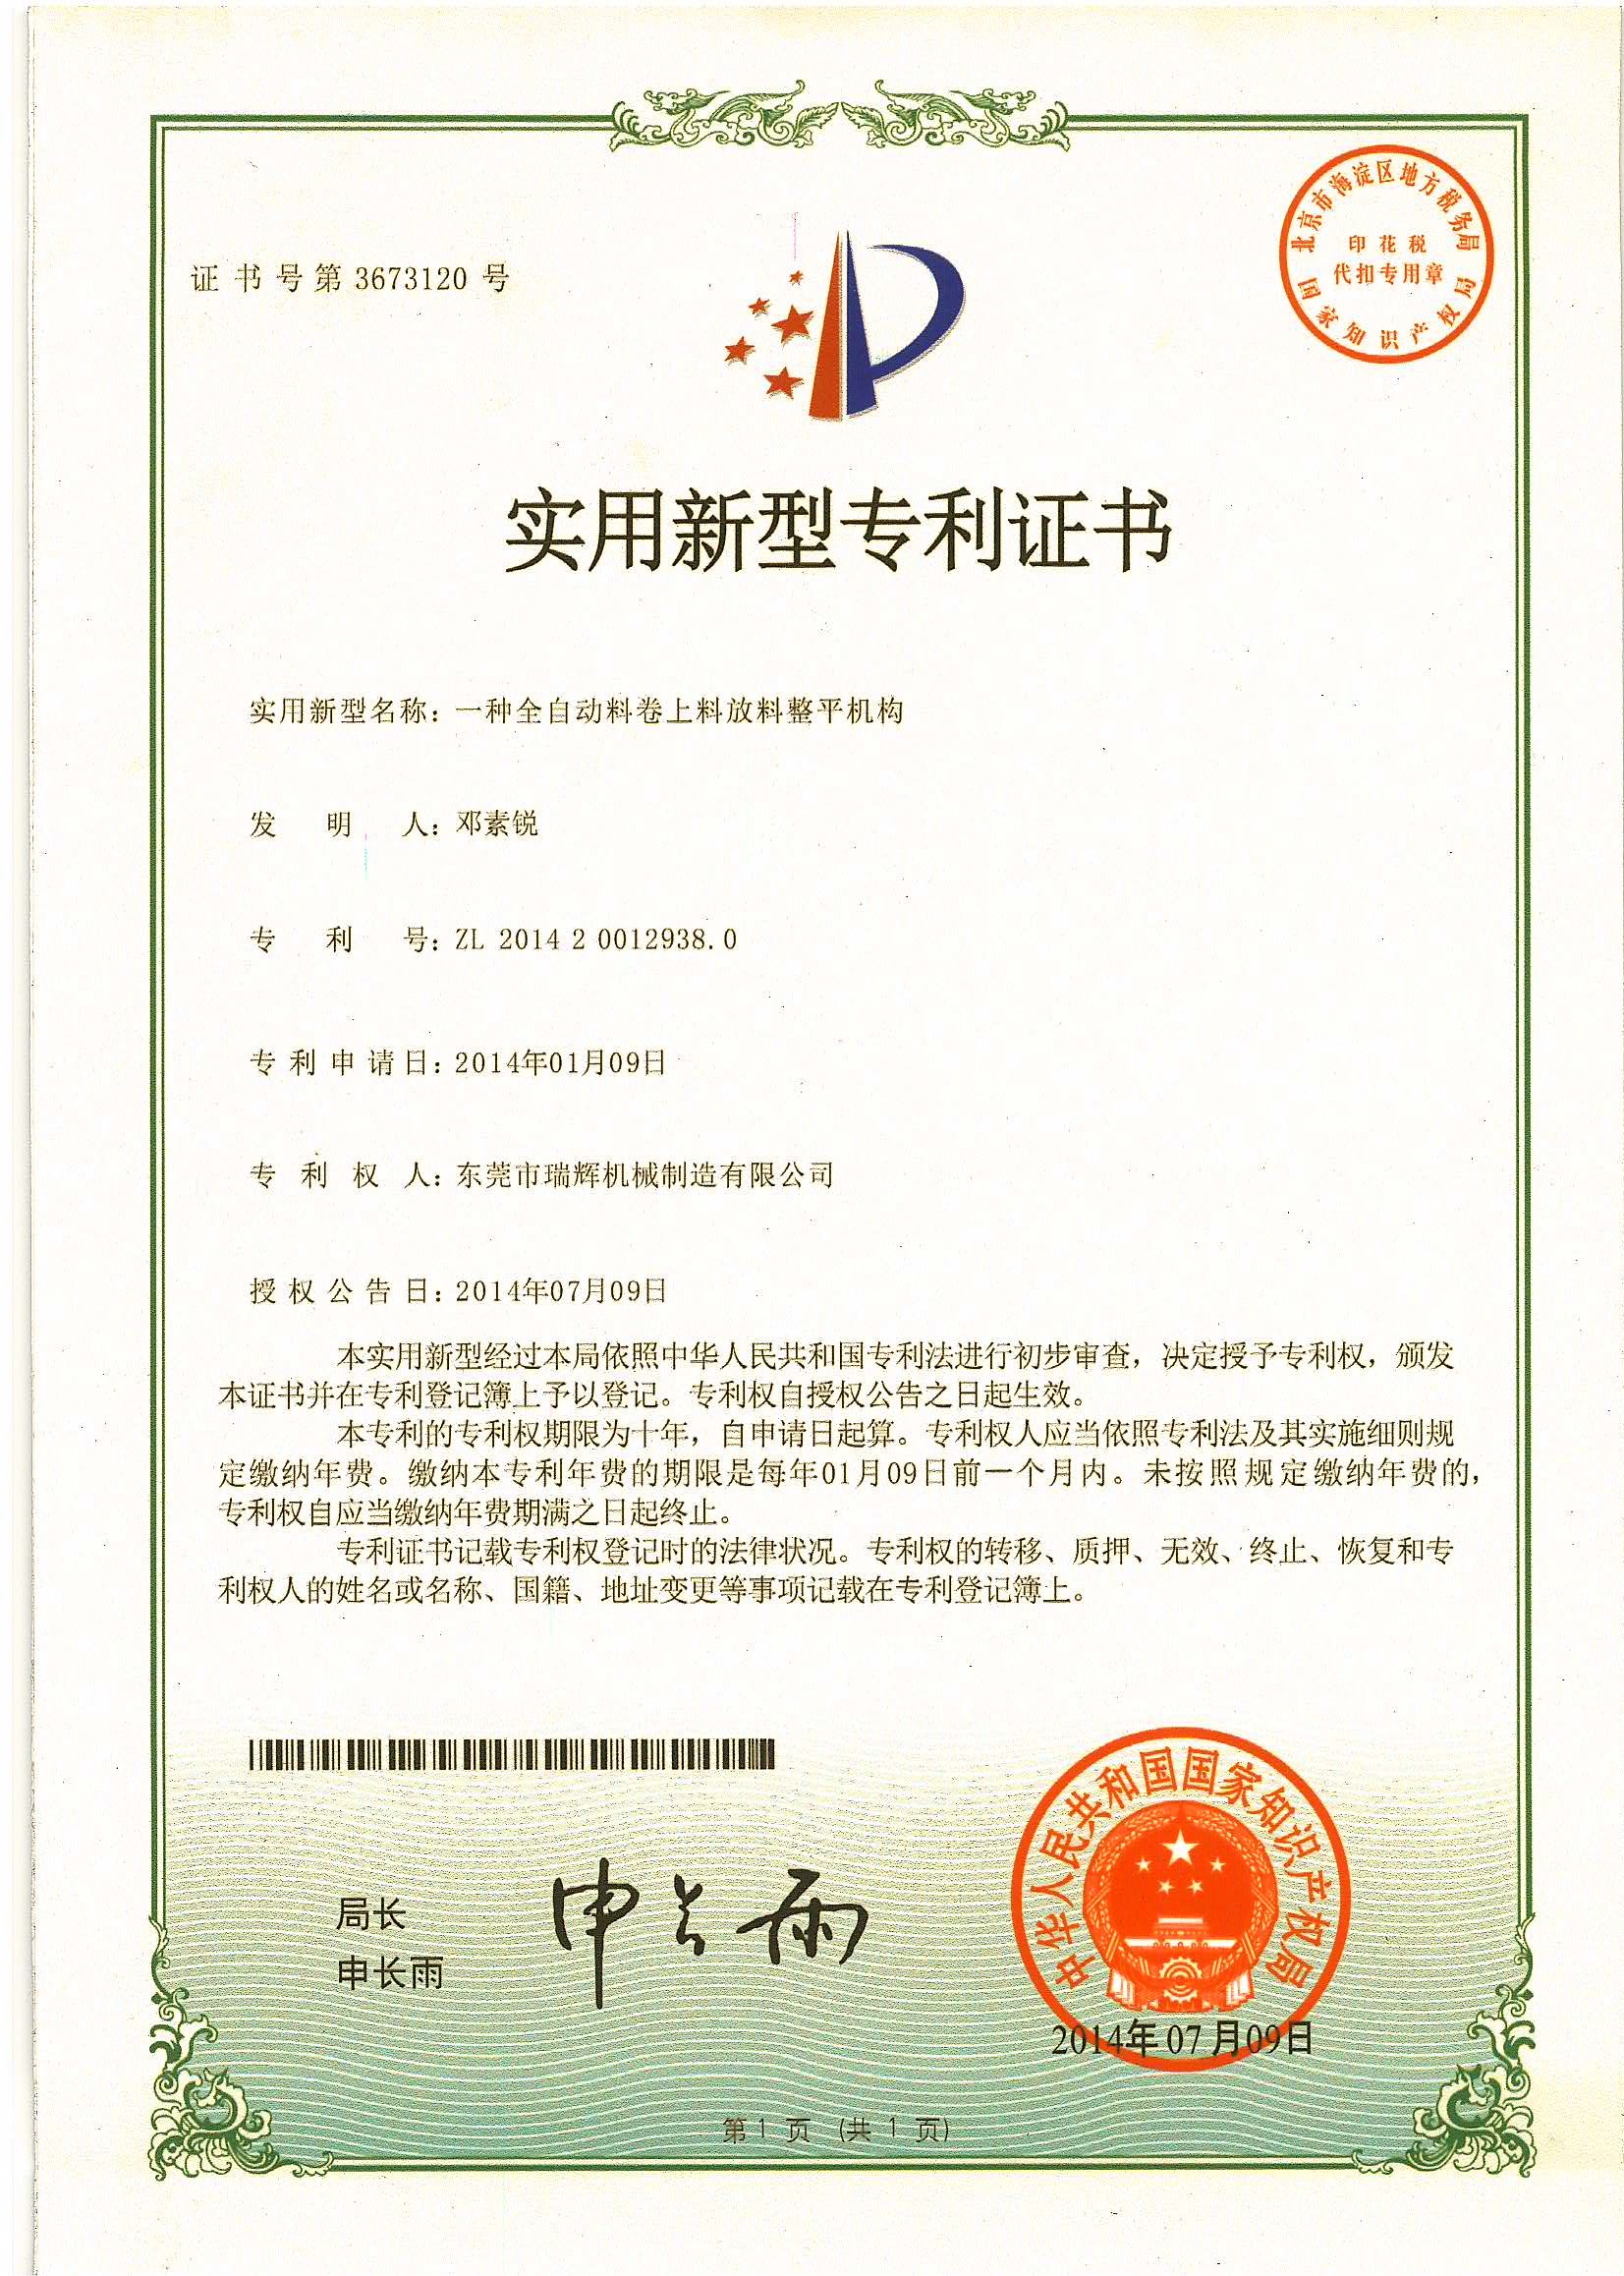 中国 GUANGDONG RUIHUI INTELLIGENT TECHNOLOGY CO., LTD. 認証